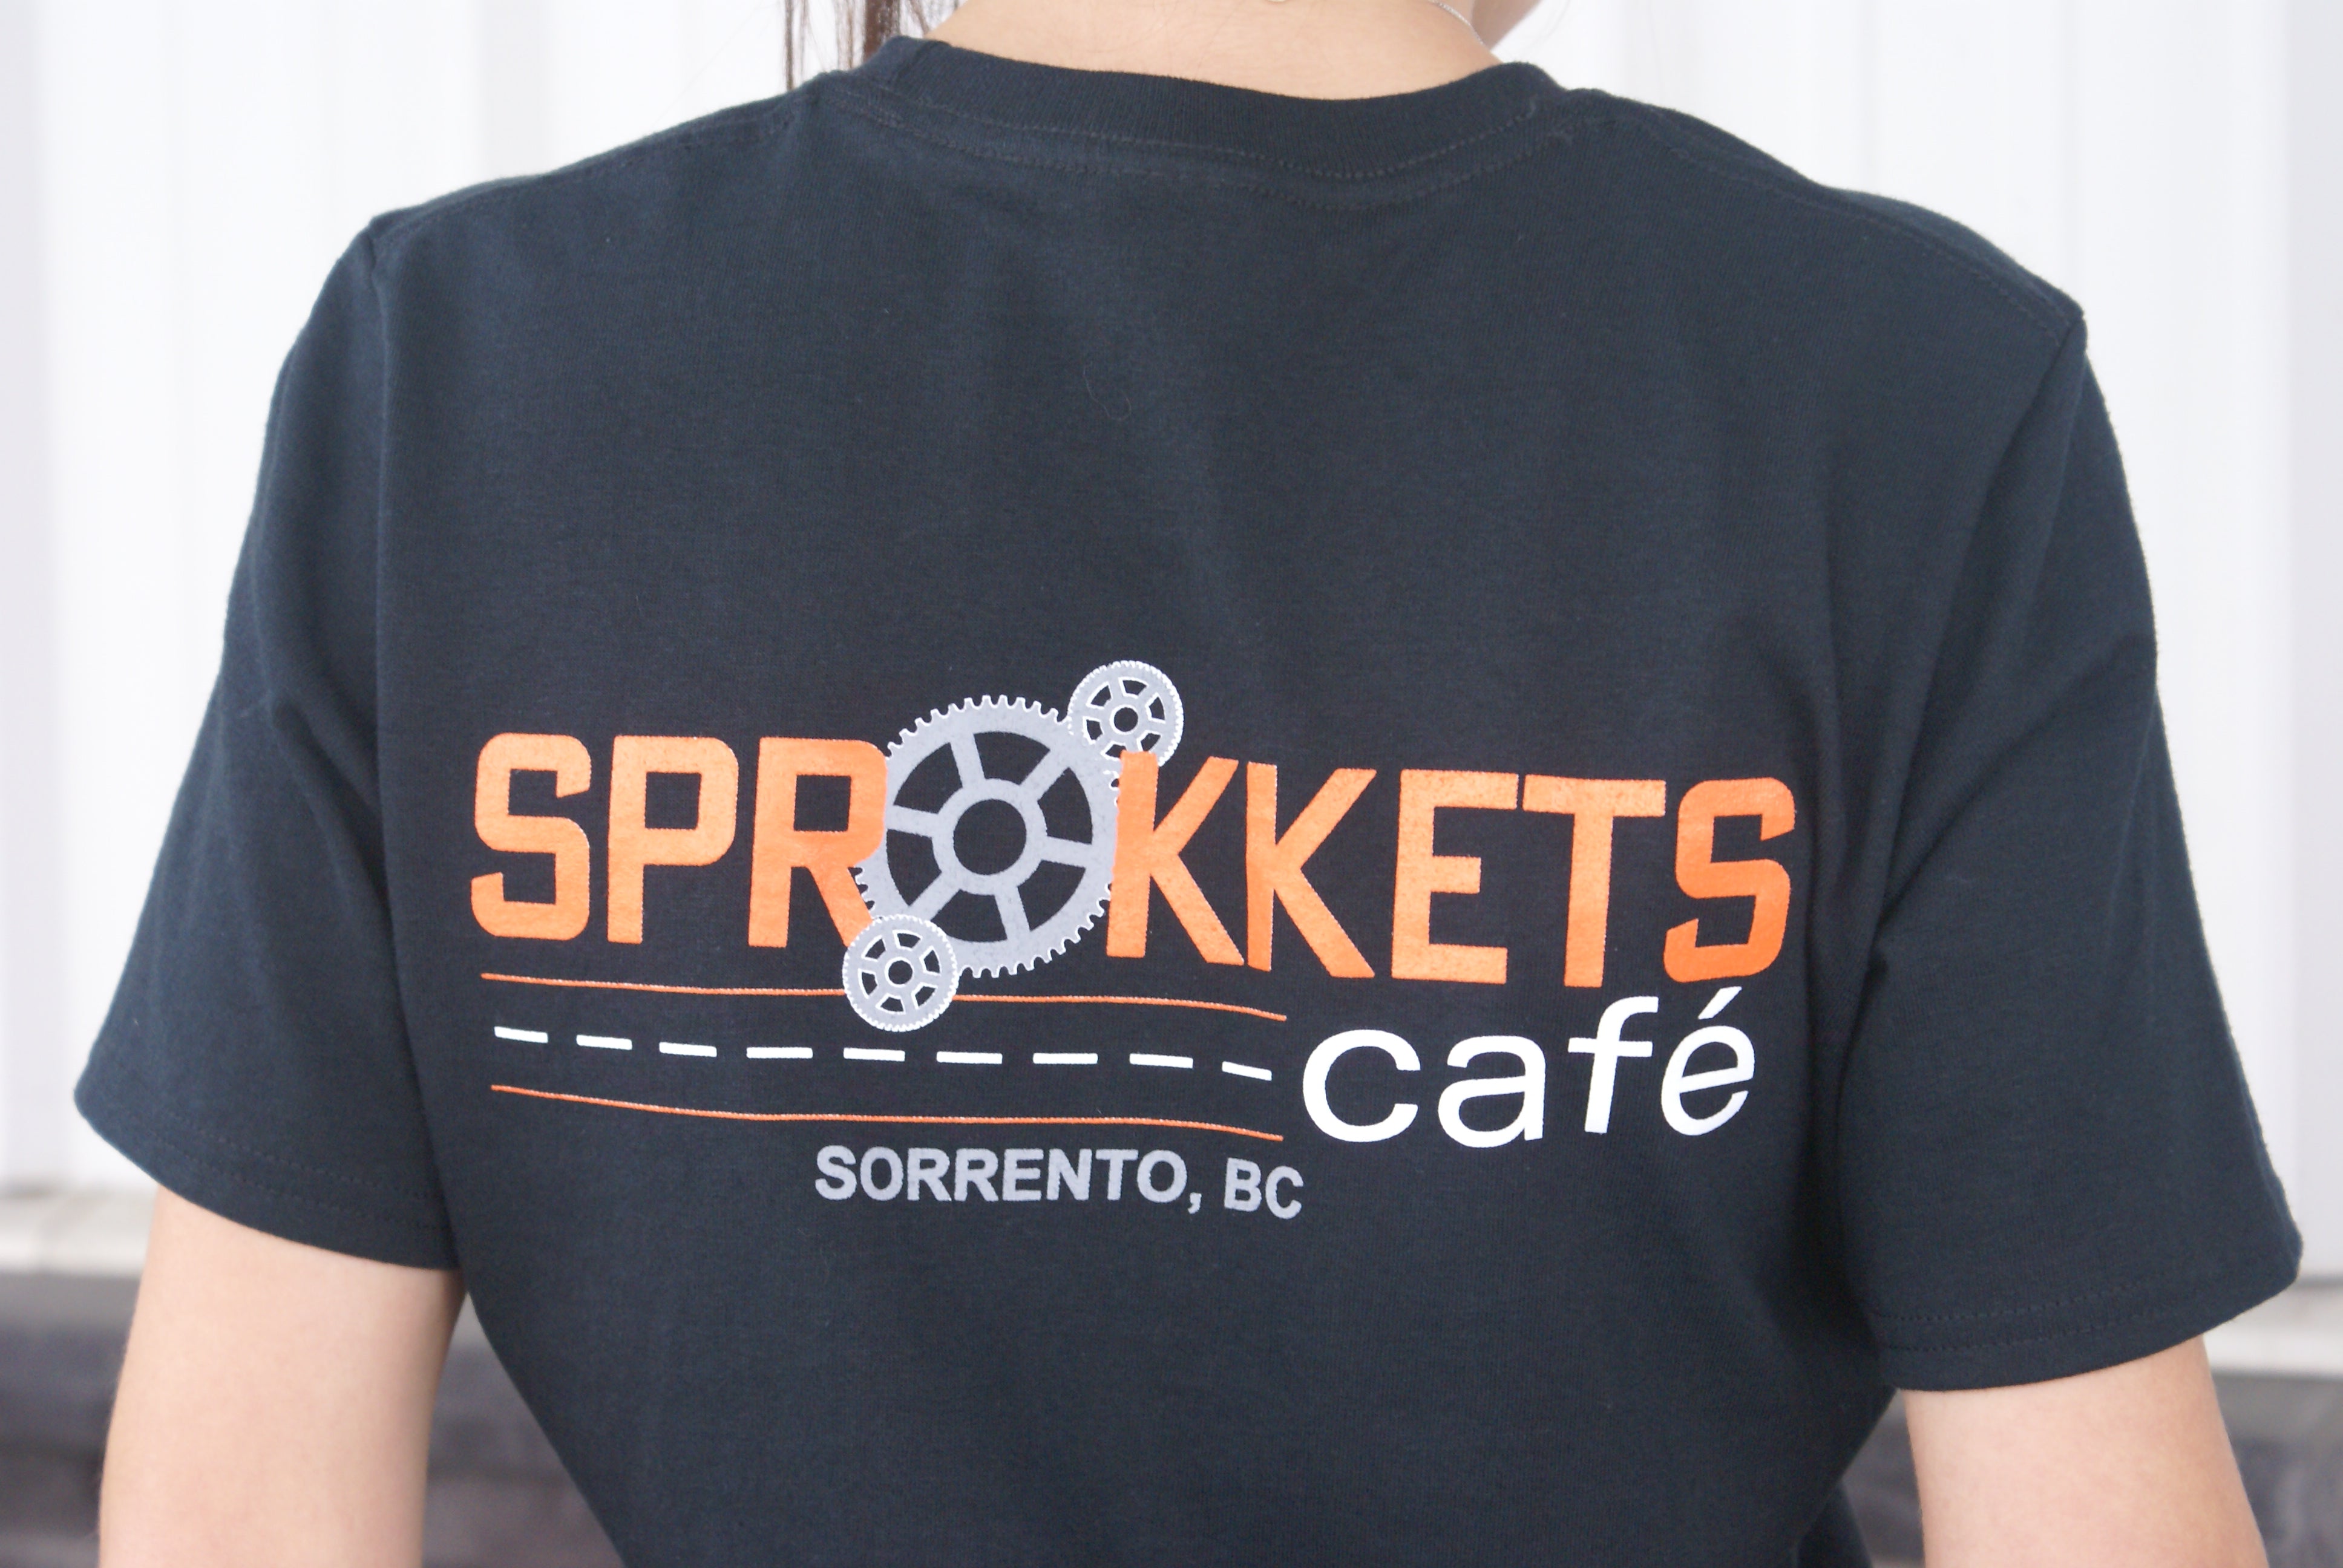 Sprokkets Cafe T shirt